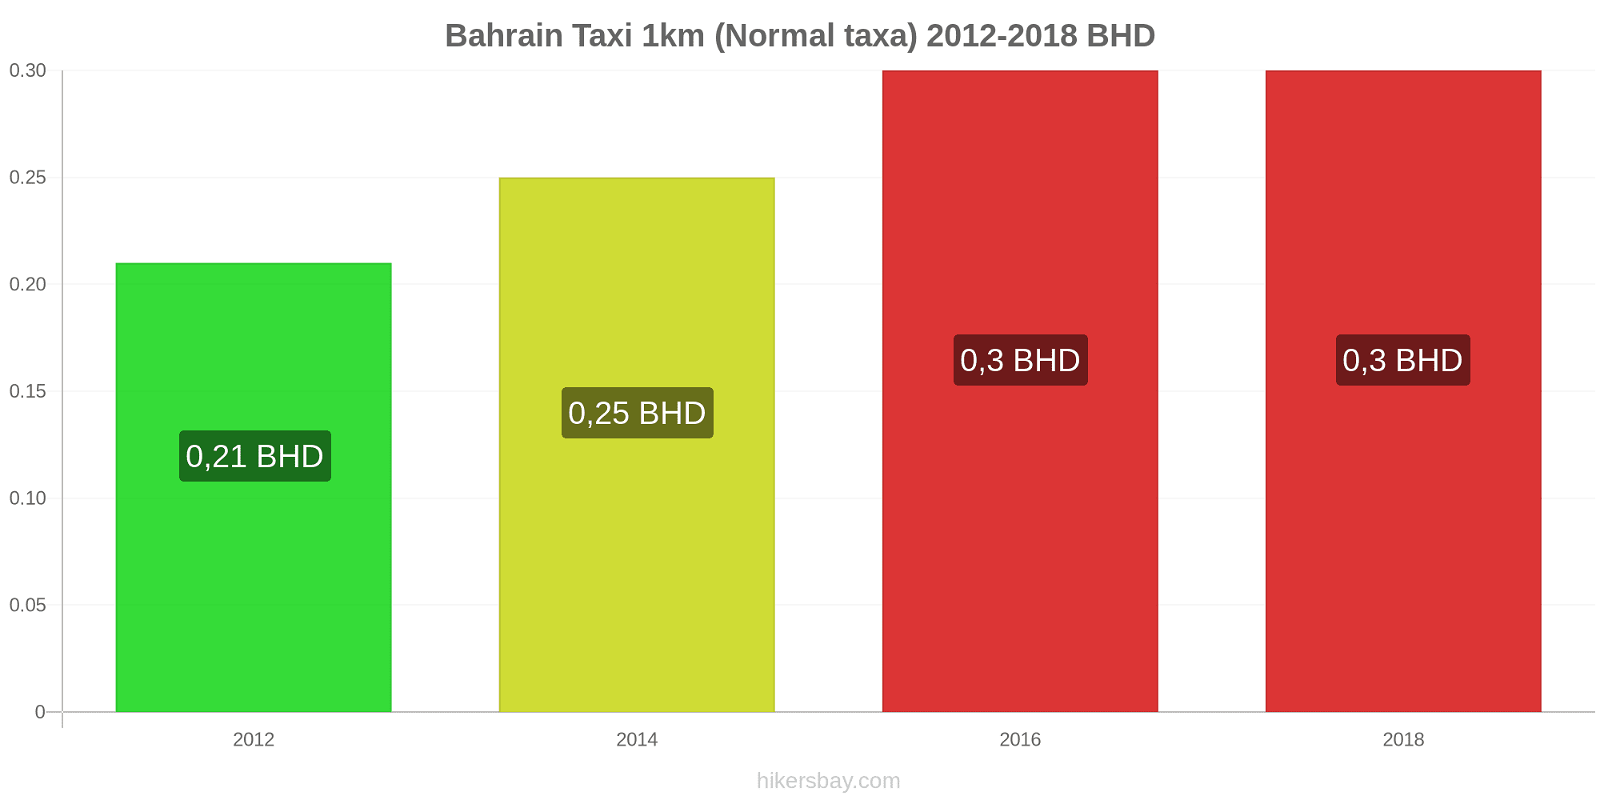 Bahrain prisändringar Taxi 1km (Normal taxa) hikersbay.com